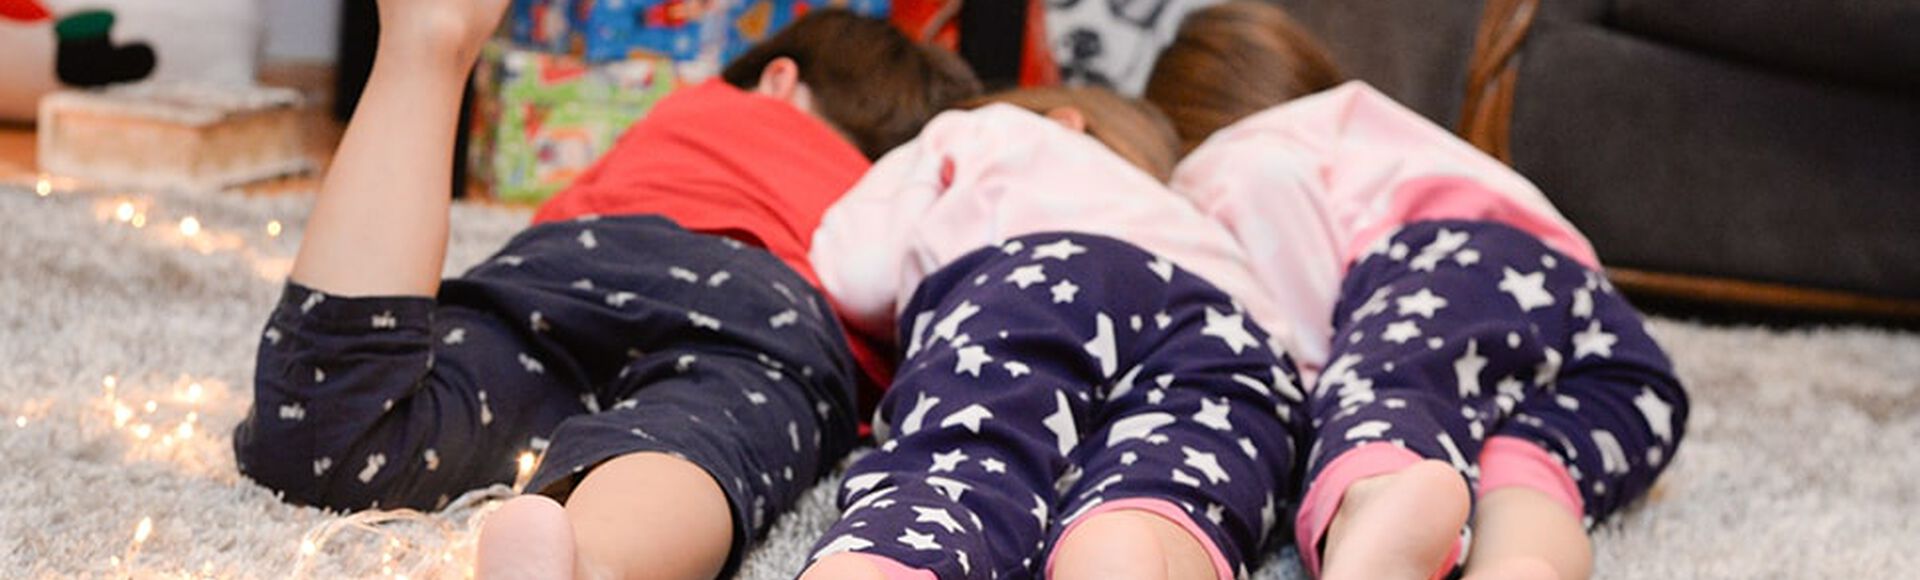 Niños acostados con el mismo pantalón de pijama